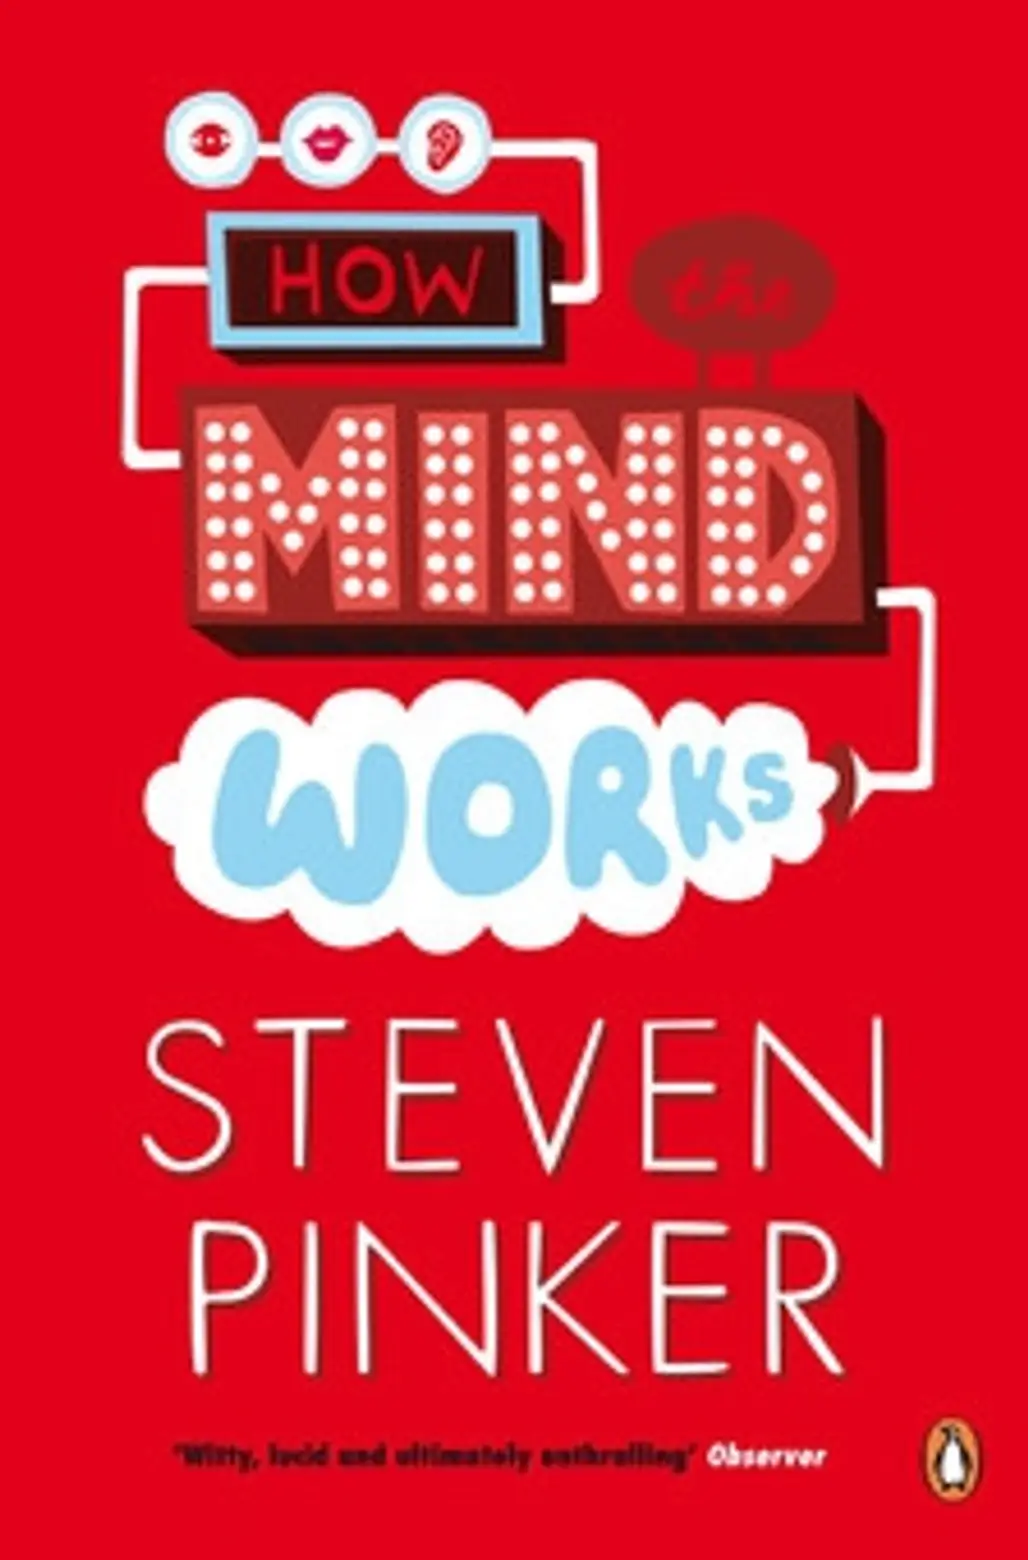 Steven Pinker – How the Mind Works